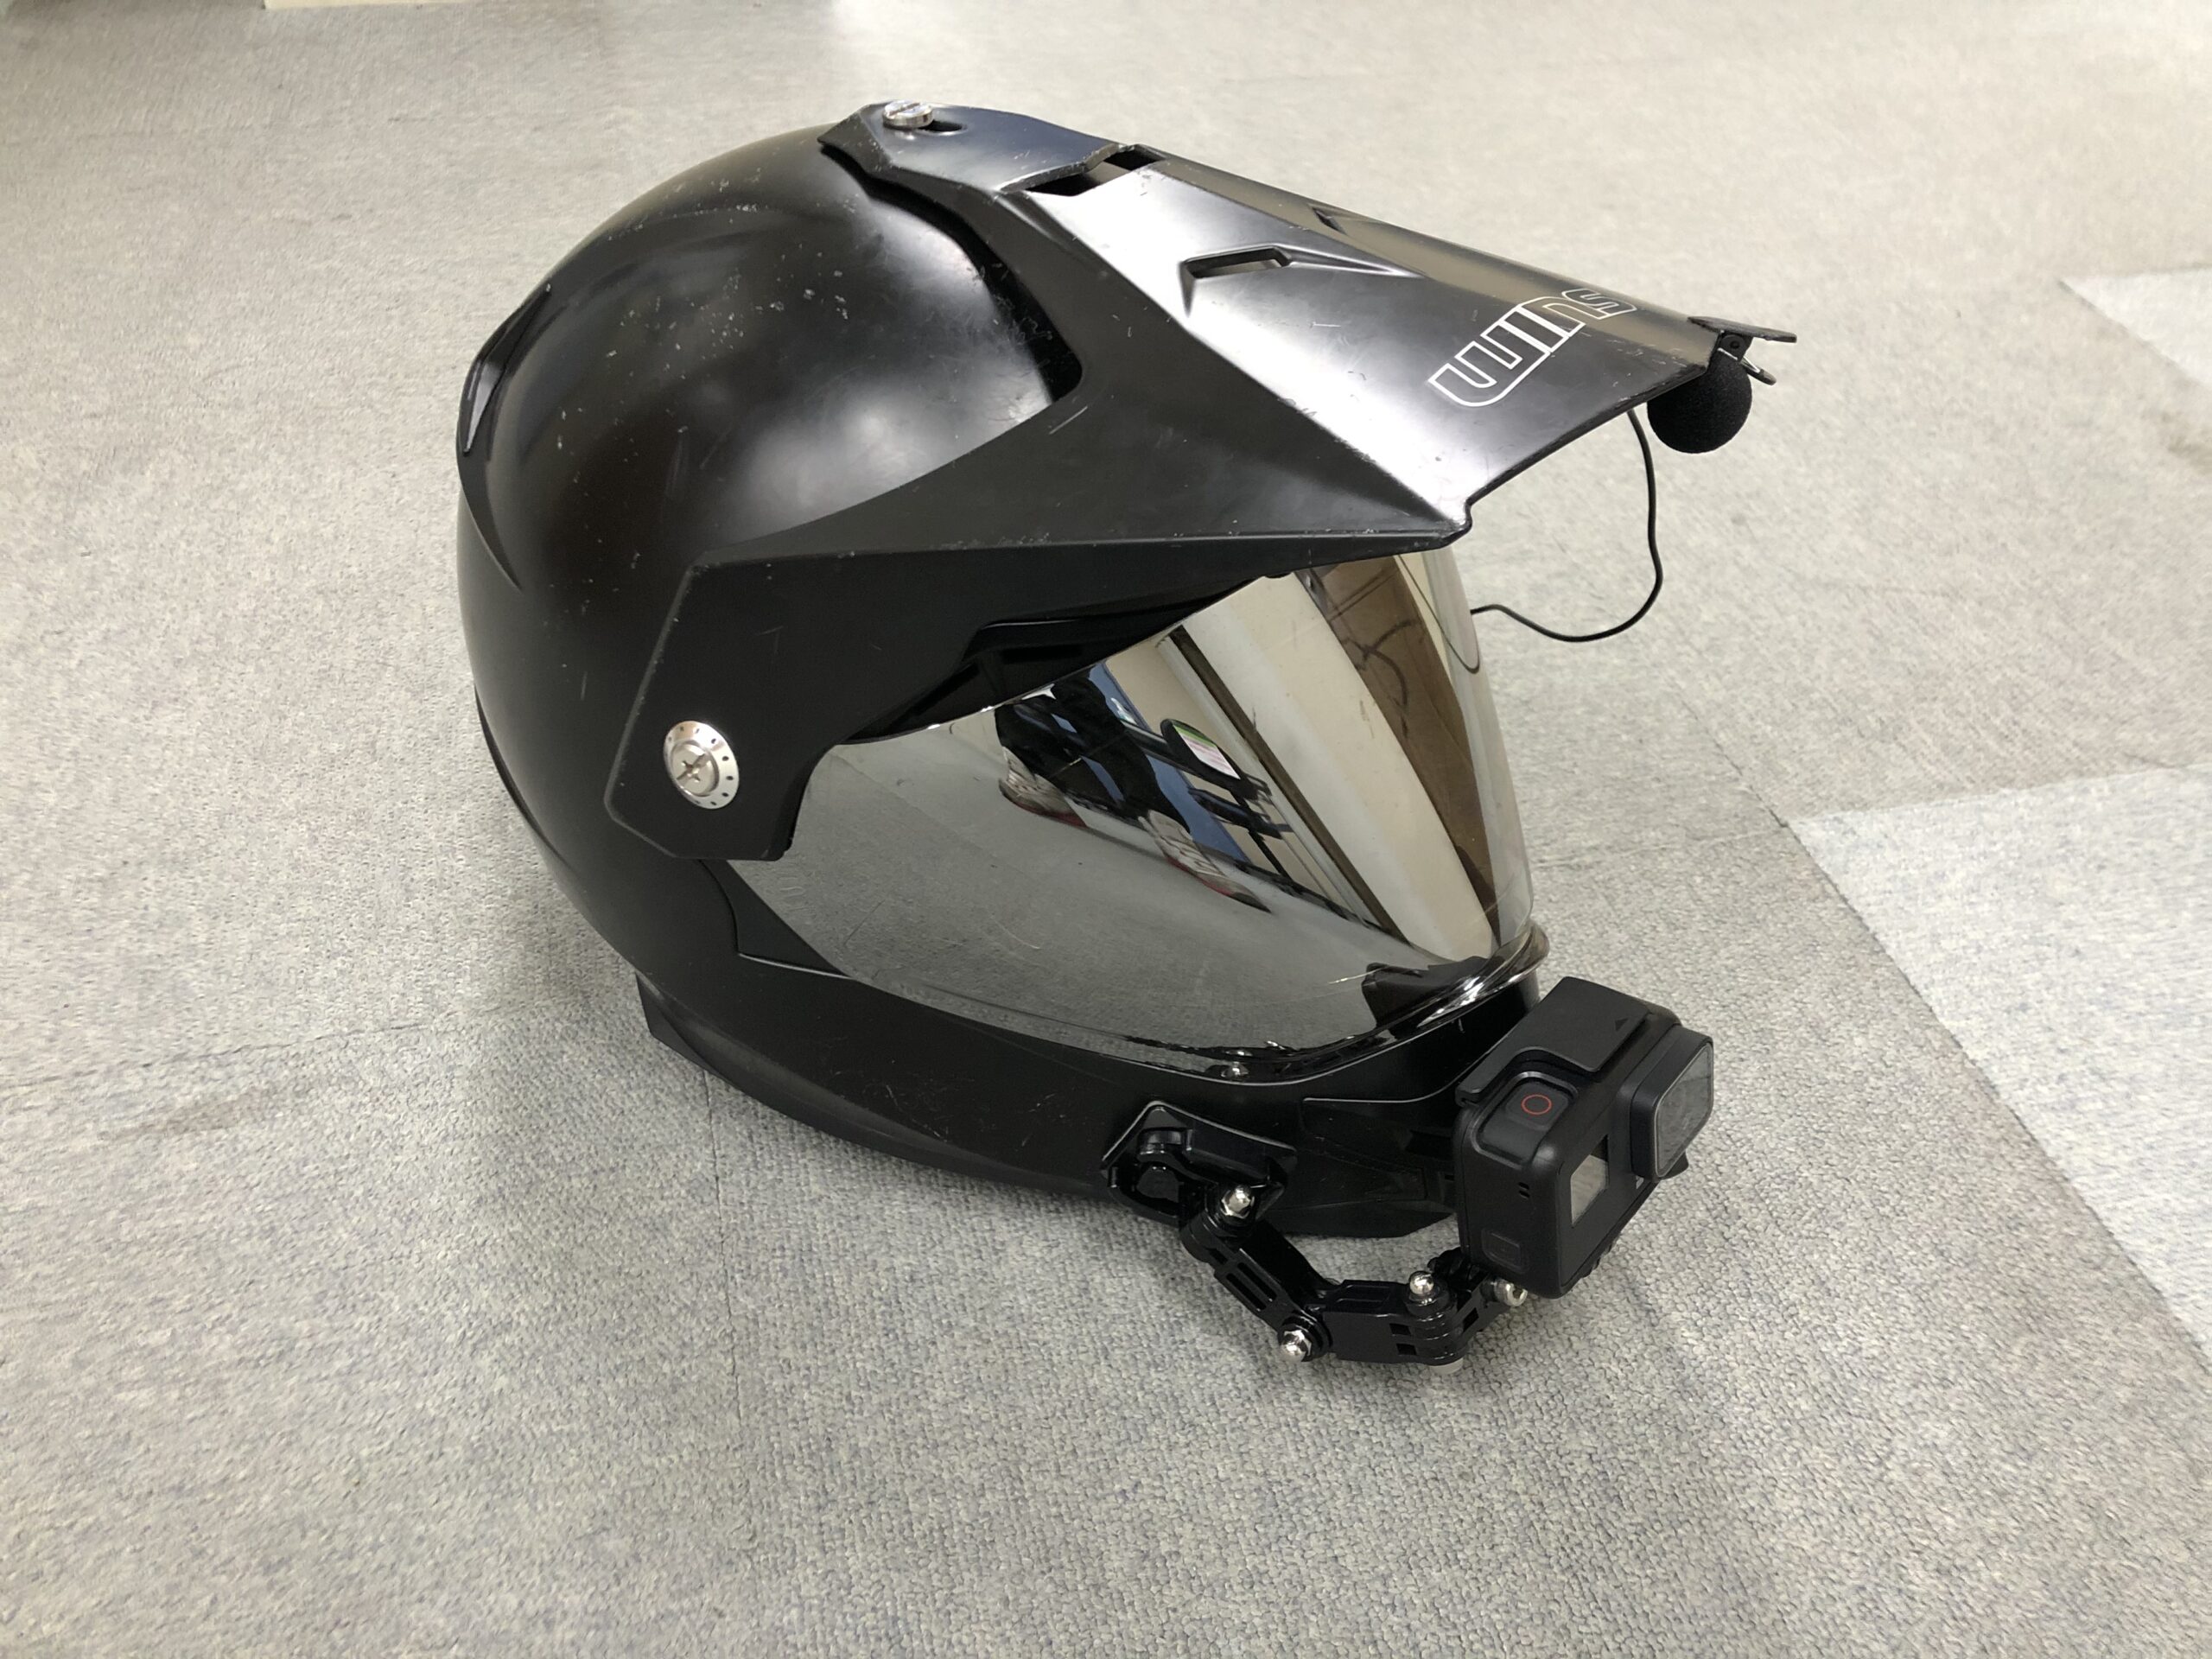 X-ROAD(シールド付オフロードヘルメット)にアクションカメラのGopro等を顎マウント(チンマウント)させる方法